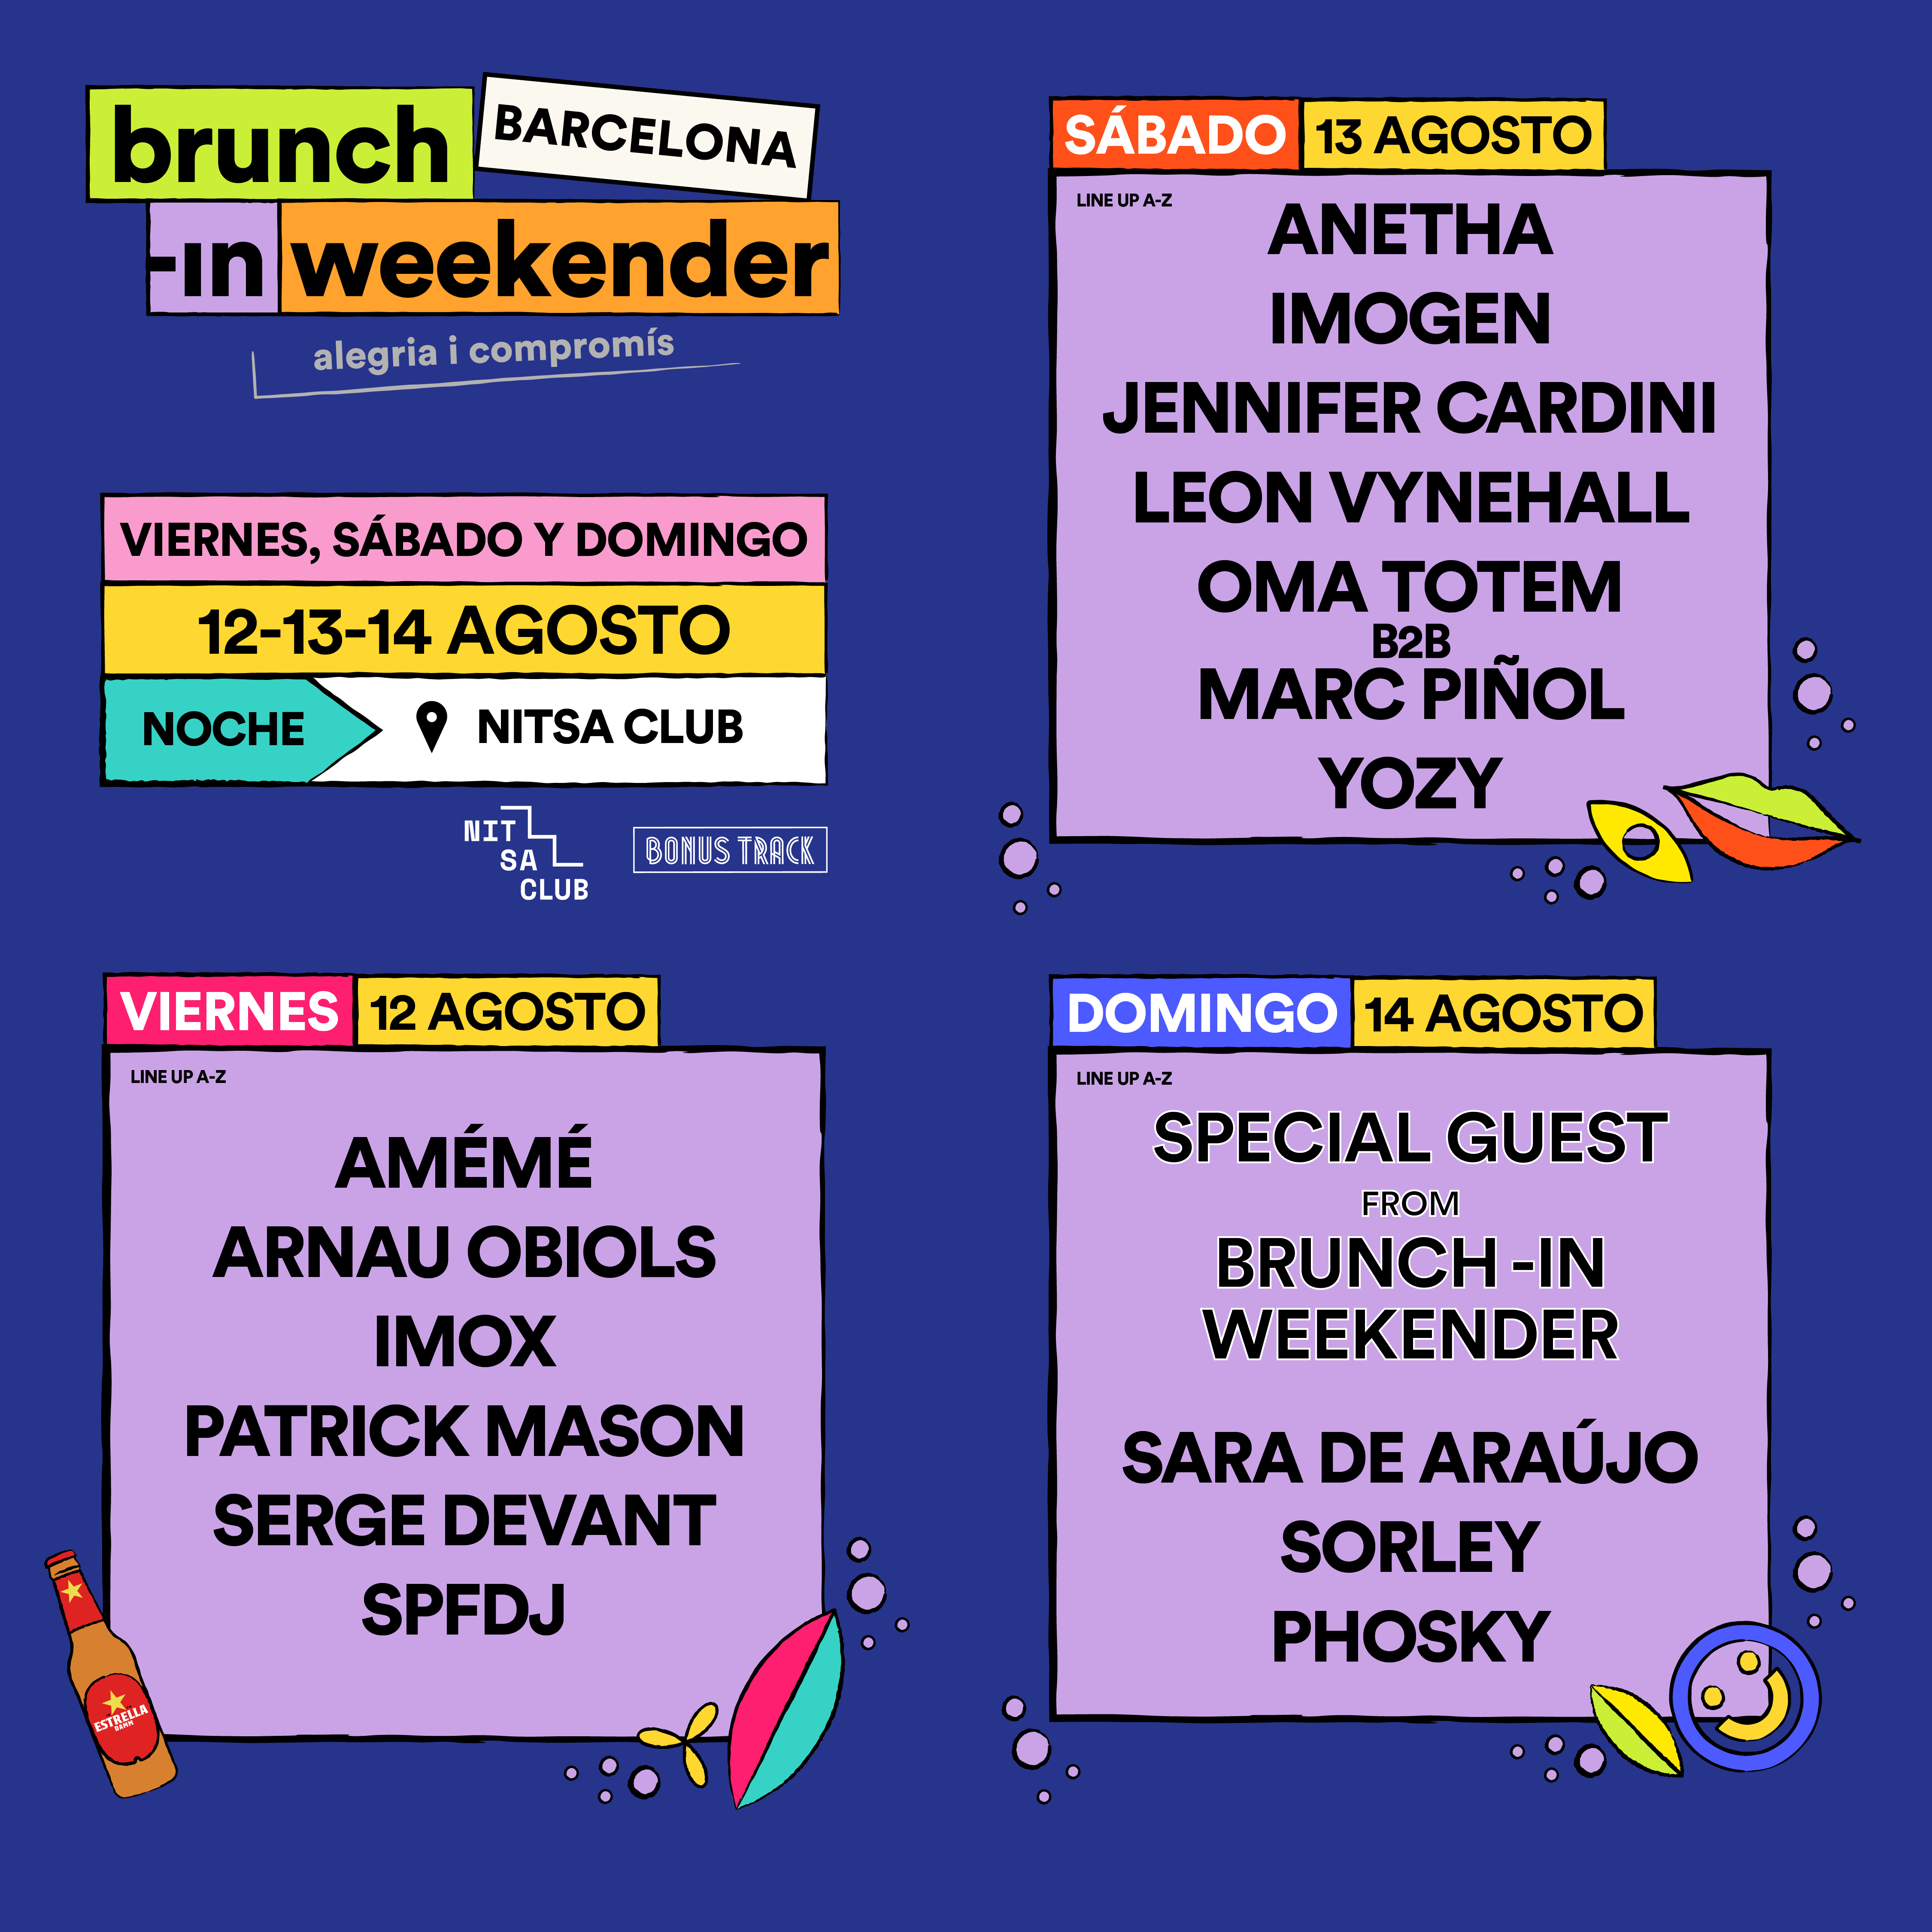 Brunch -In Weekender SATURDAY 13 nightime: Anetha, Jennifer Cardini, Leon Vynehall y más - Página trasera